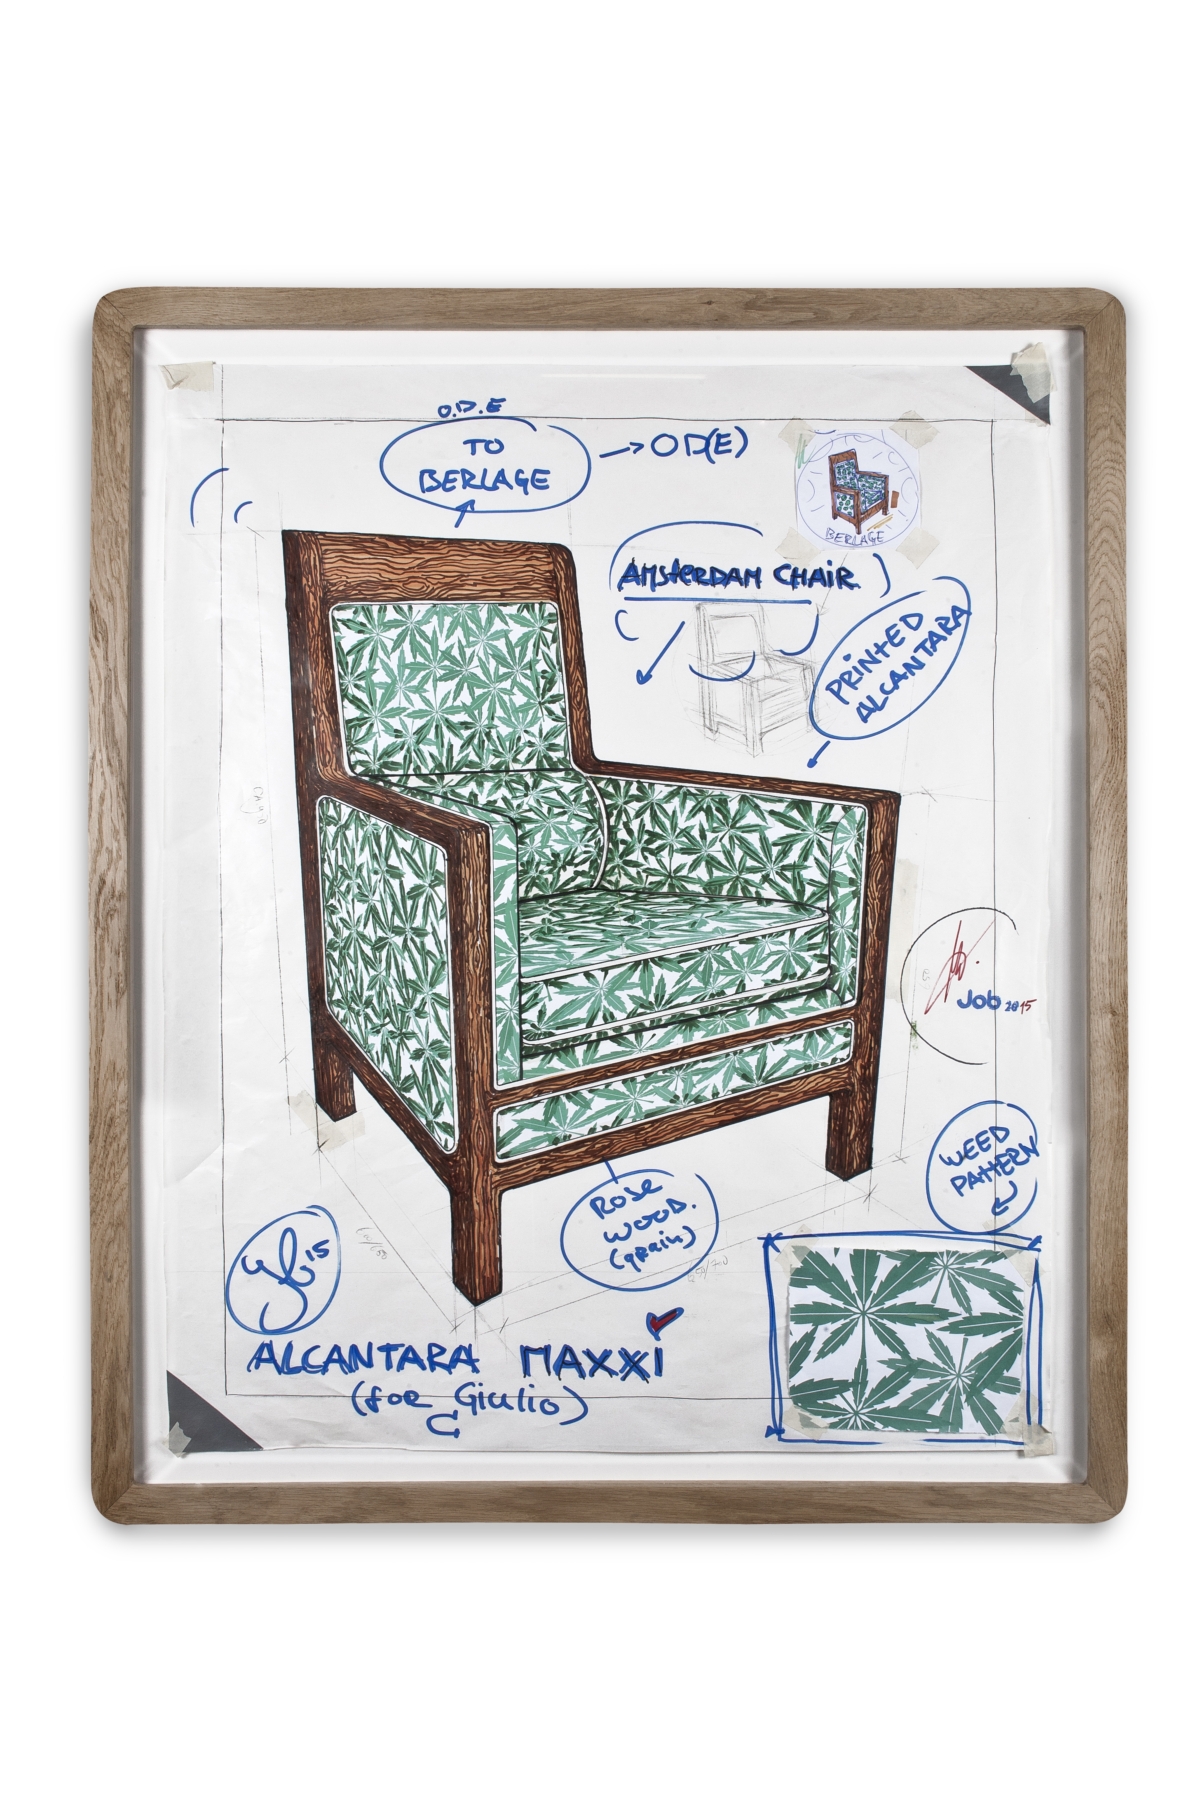 Local Icons. Progetto Alcantara-MAXXI Job Amsterdam Chair